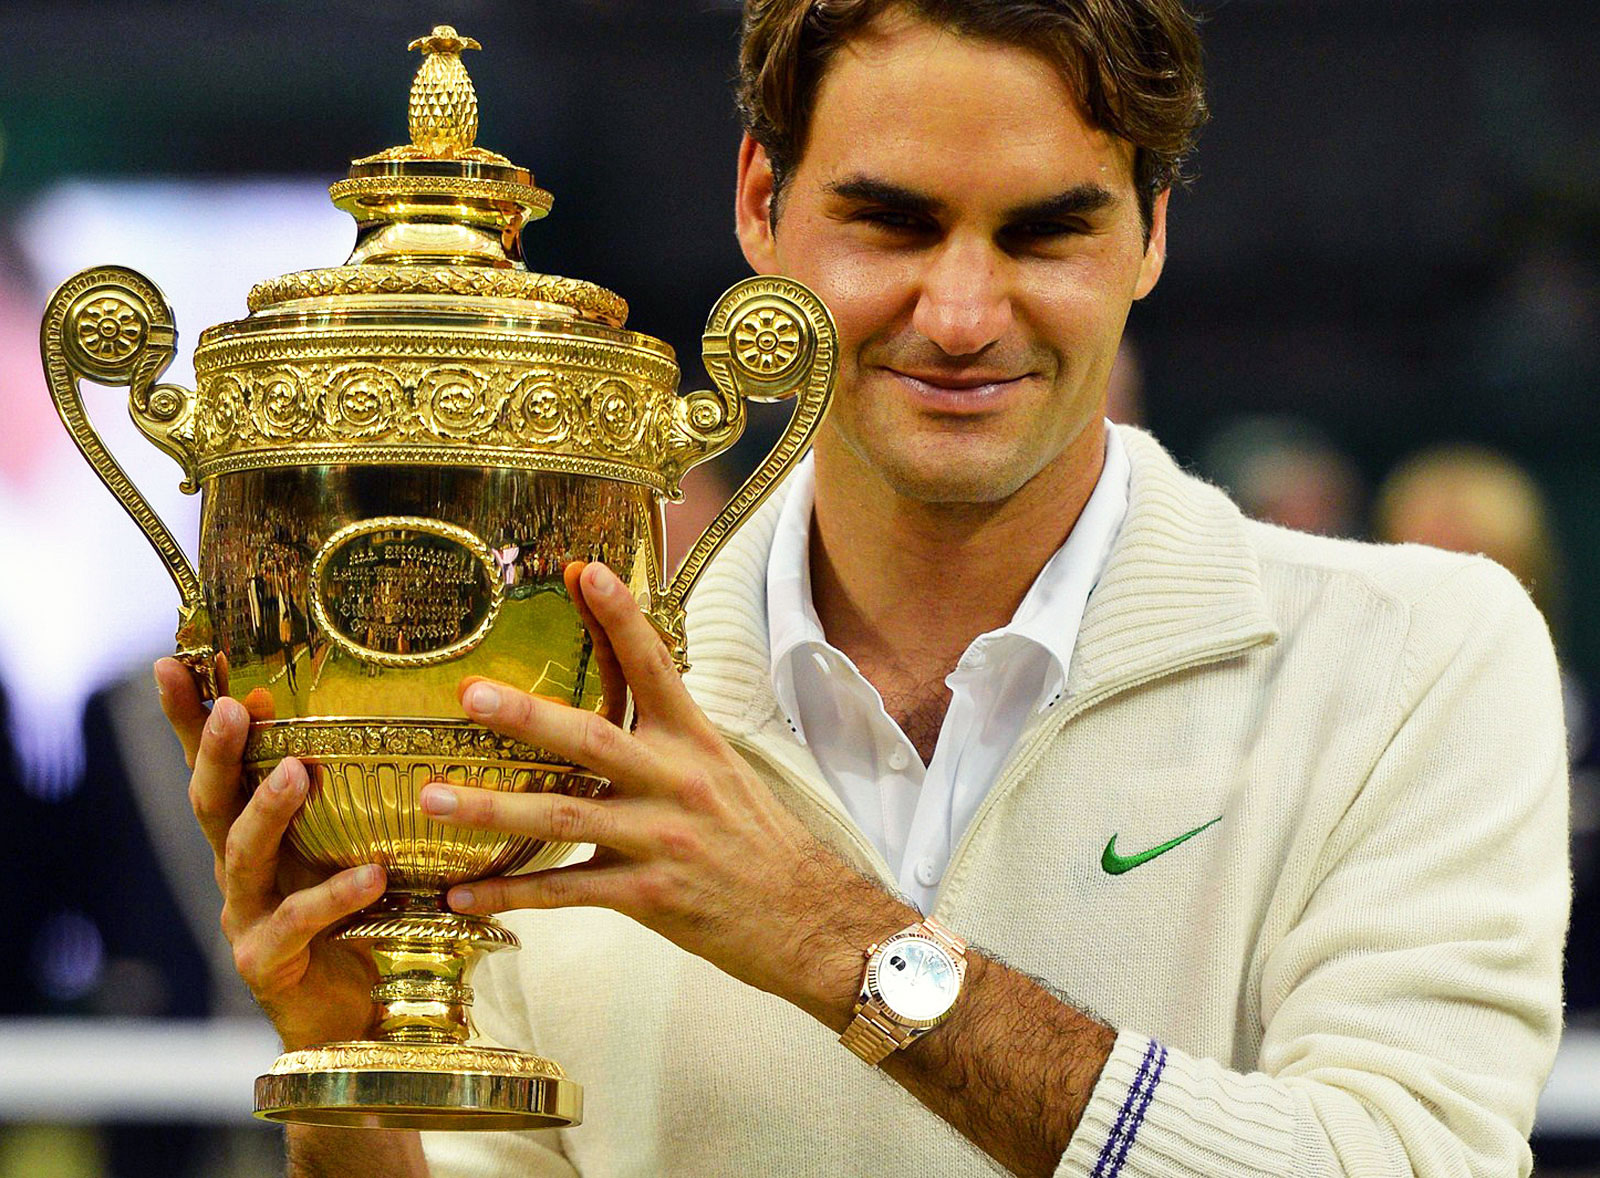 Amazing Hd Roger Federer Image - Roger Federer Gold Rolex , HD Wallpaper & Backgrounds